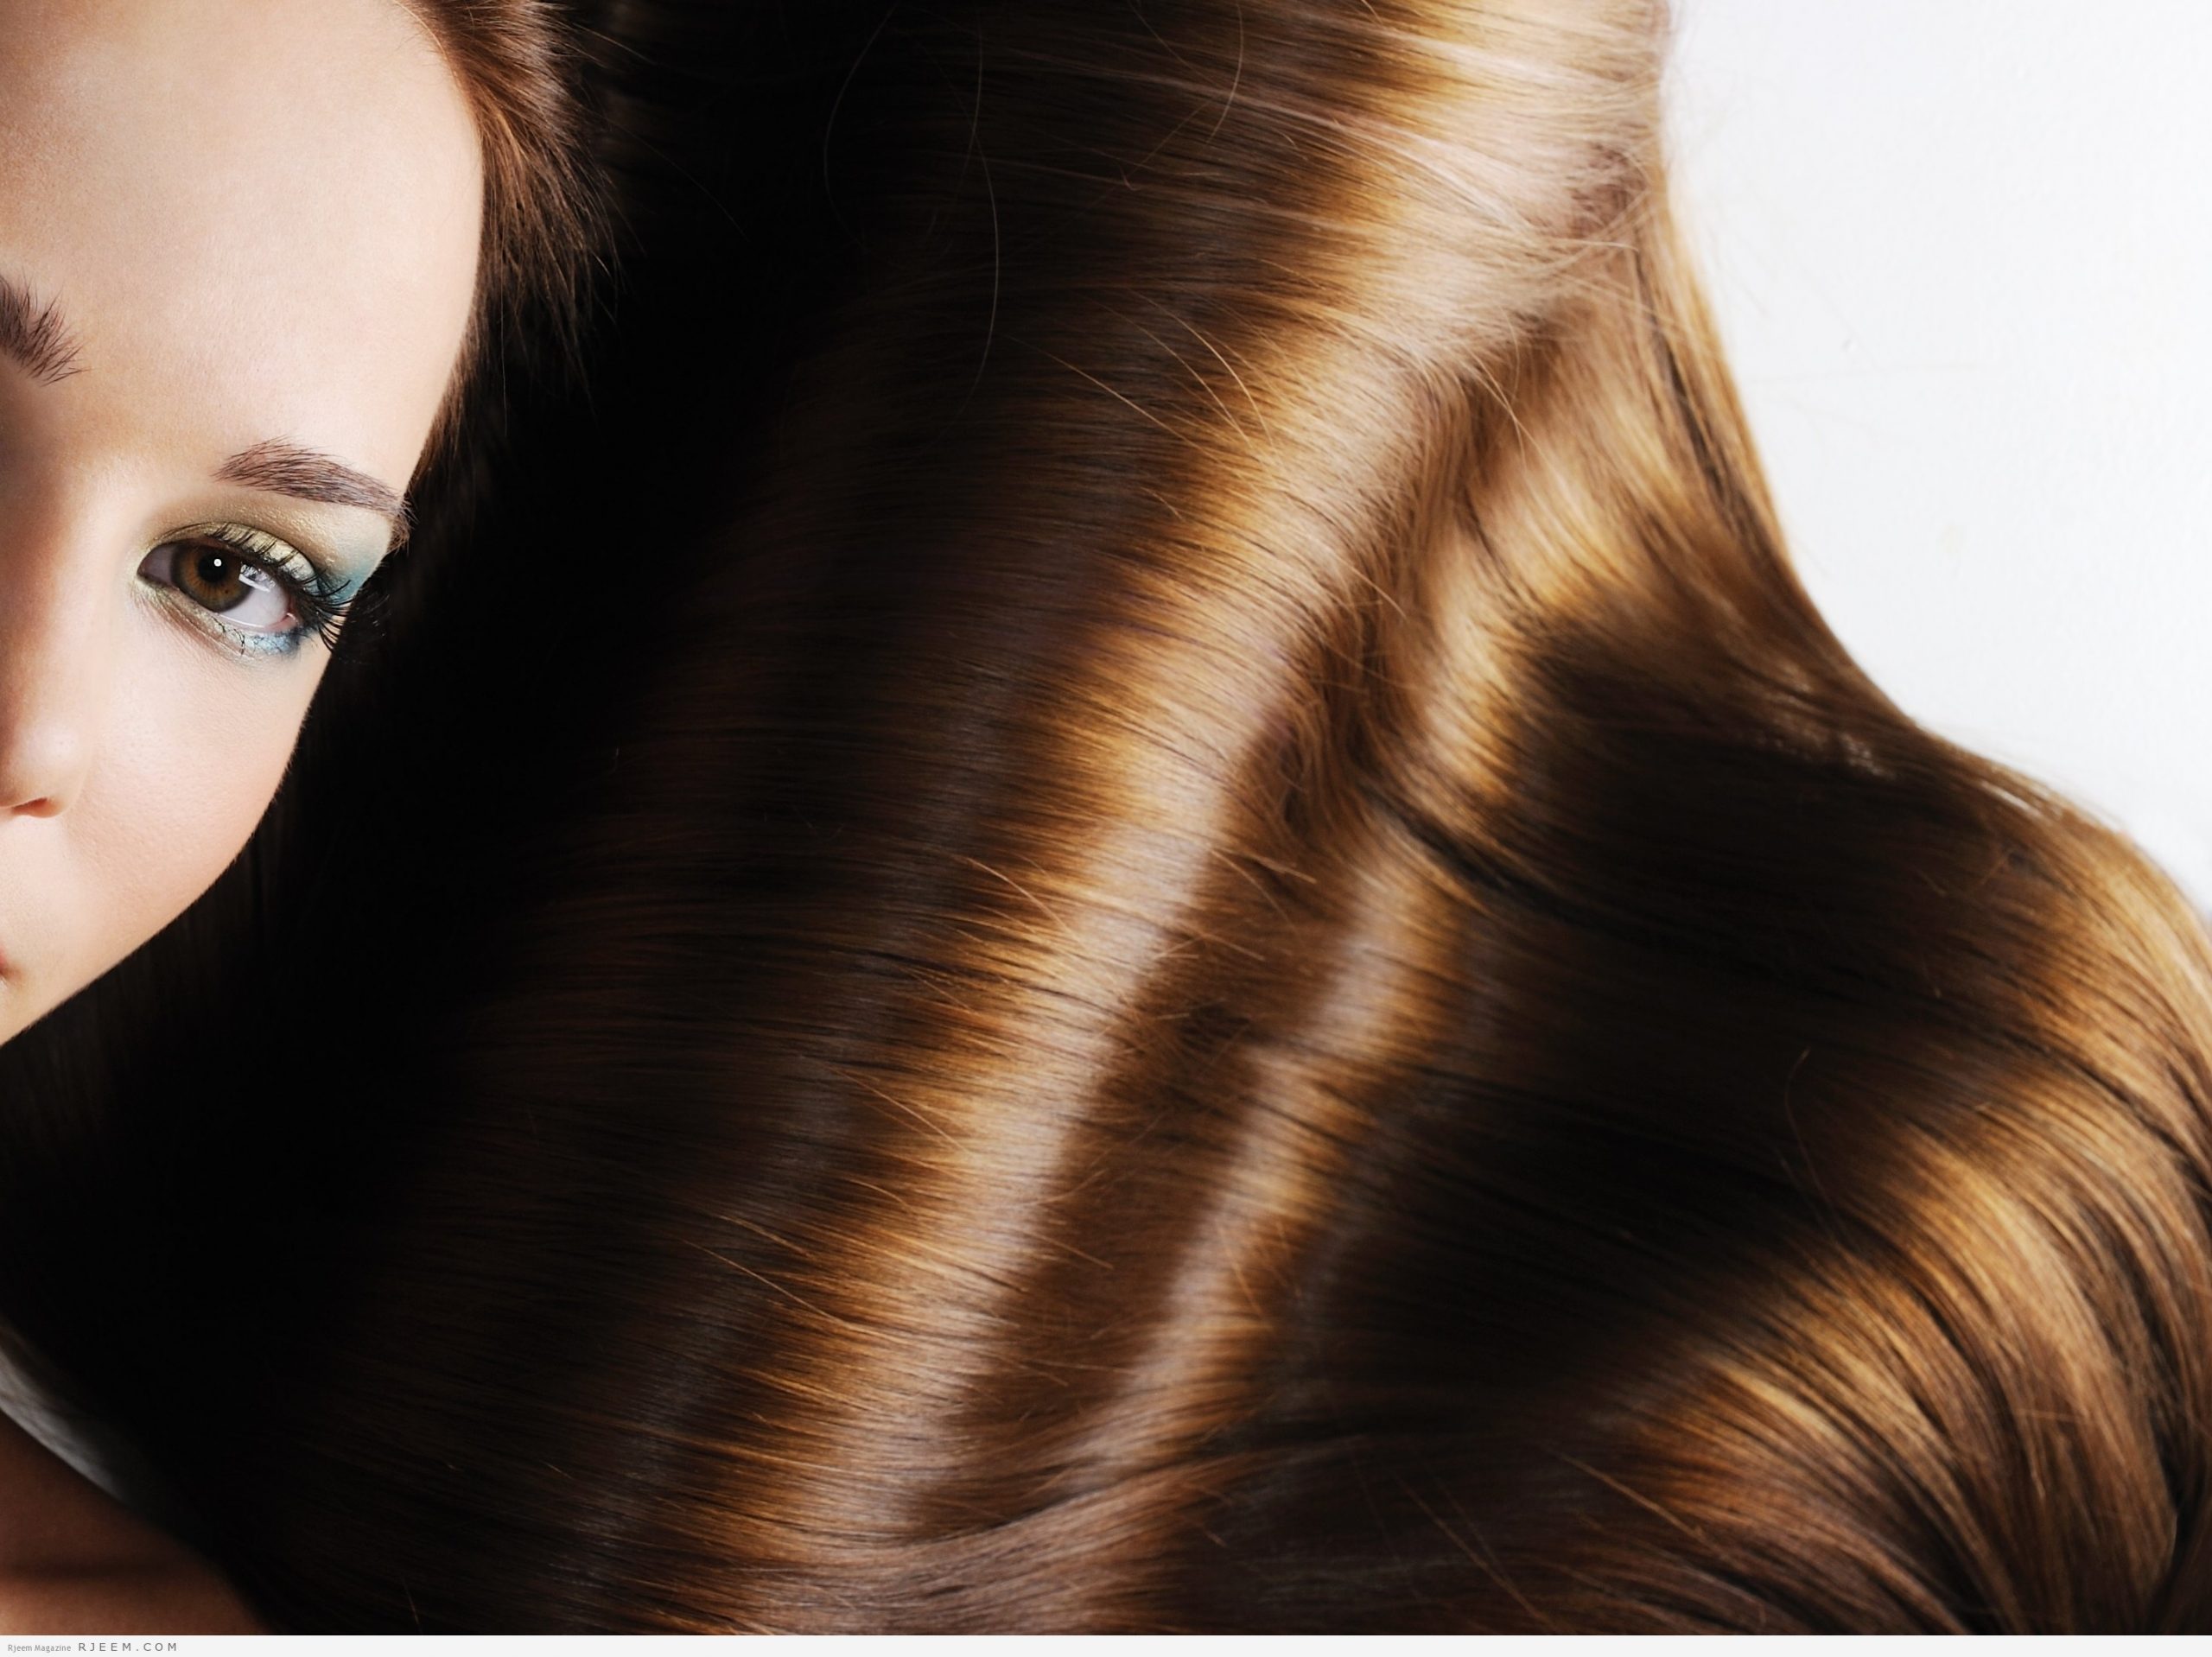 وصفات طبيعية تعمل على زيادة كثافة الشعر بشكل مُذهل